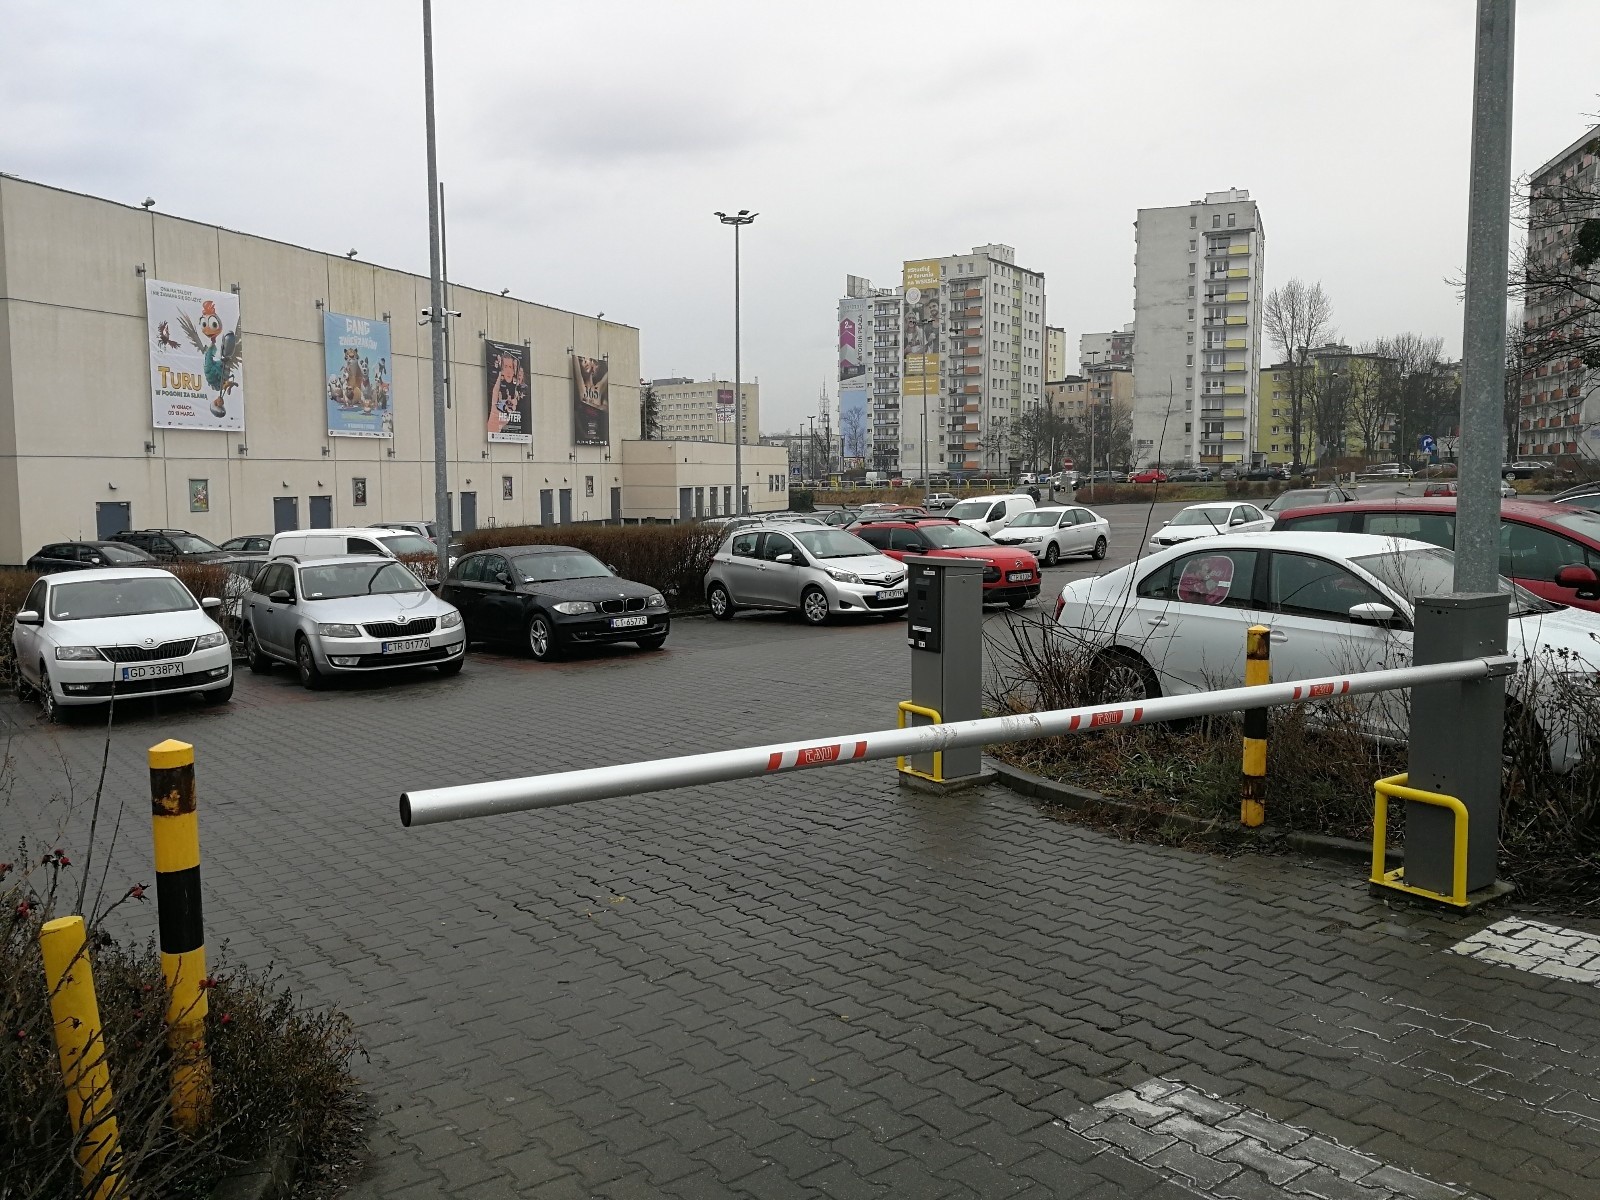 Darmowe parkingi w okolicach starówki w Toruniu. Gdzie